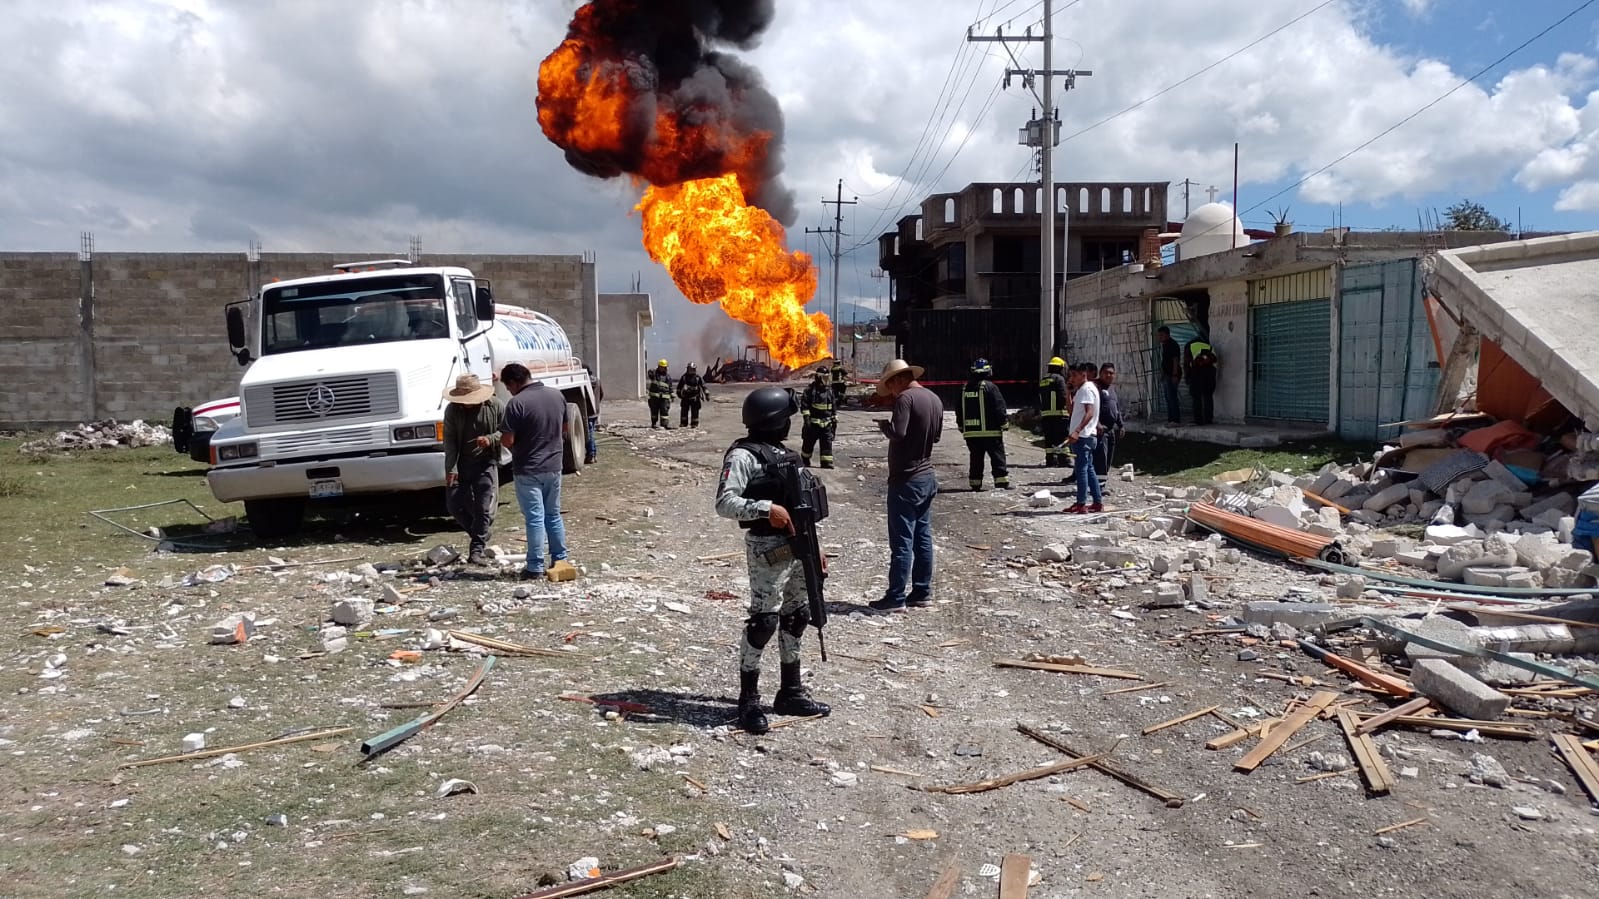 Protección Civil, Bomberos, Sedena y GN ya se encuentran atendiendo el incendio que dejó la explosión (Foto: Twitter/@GN_MEXICO_)